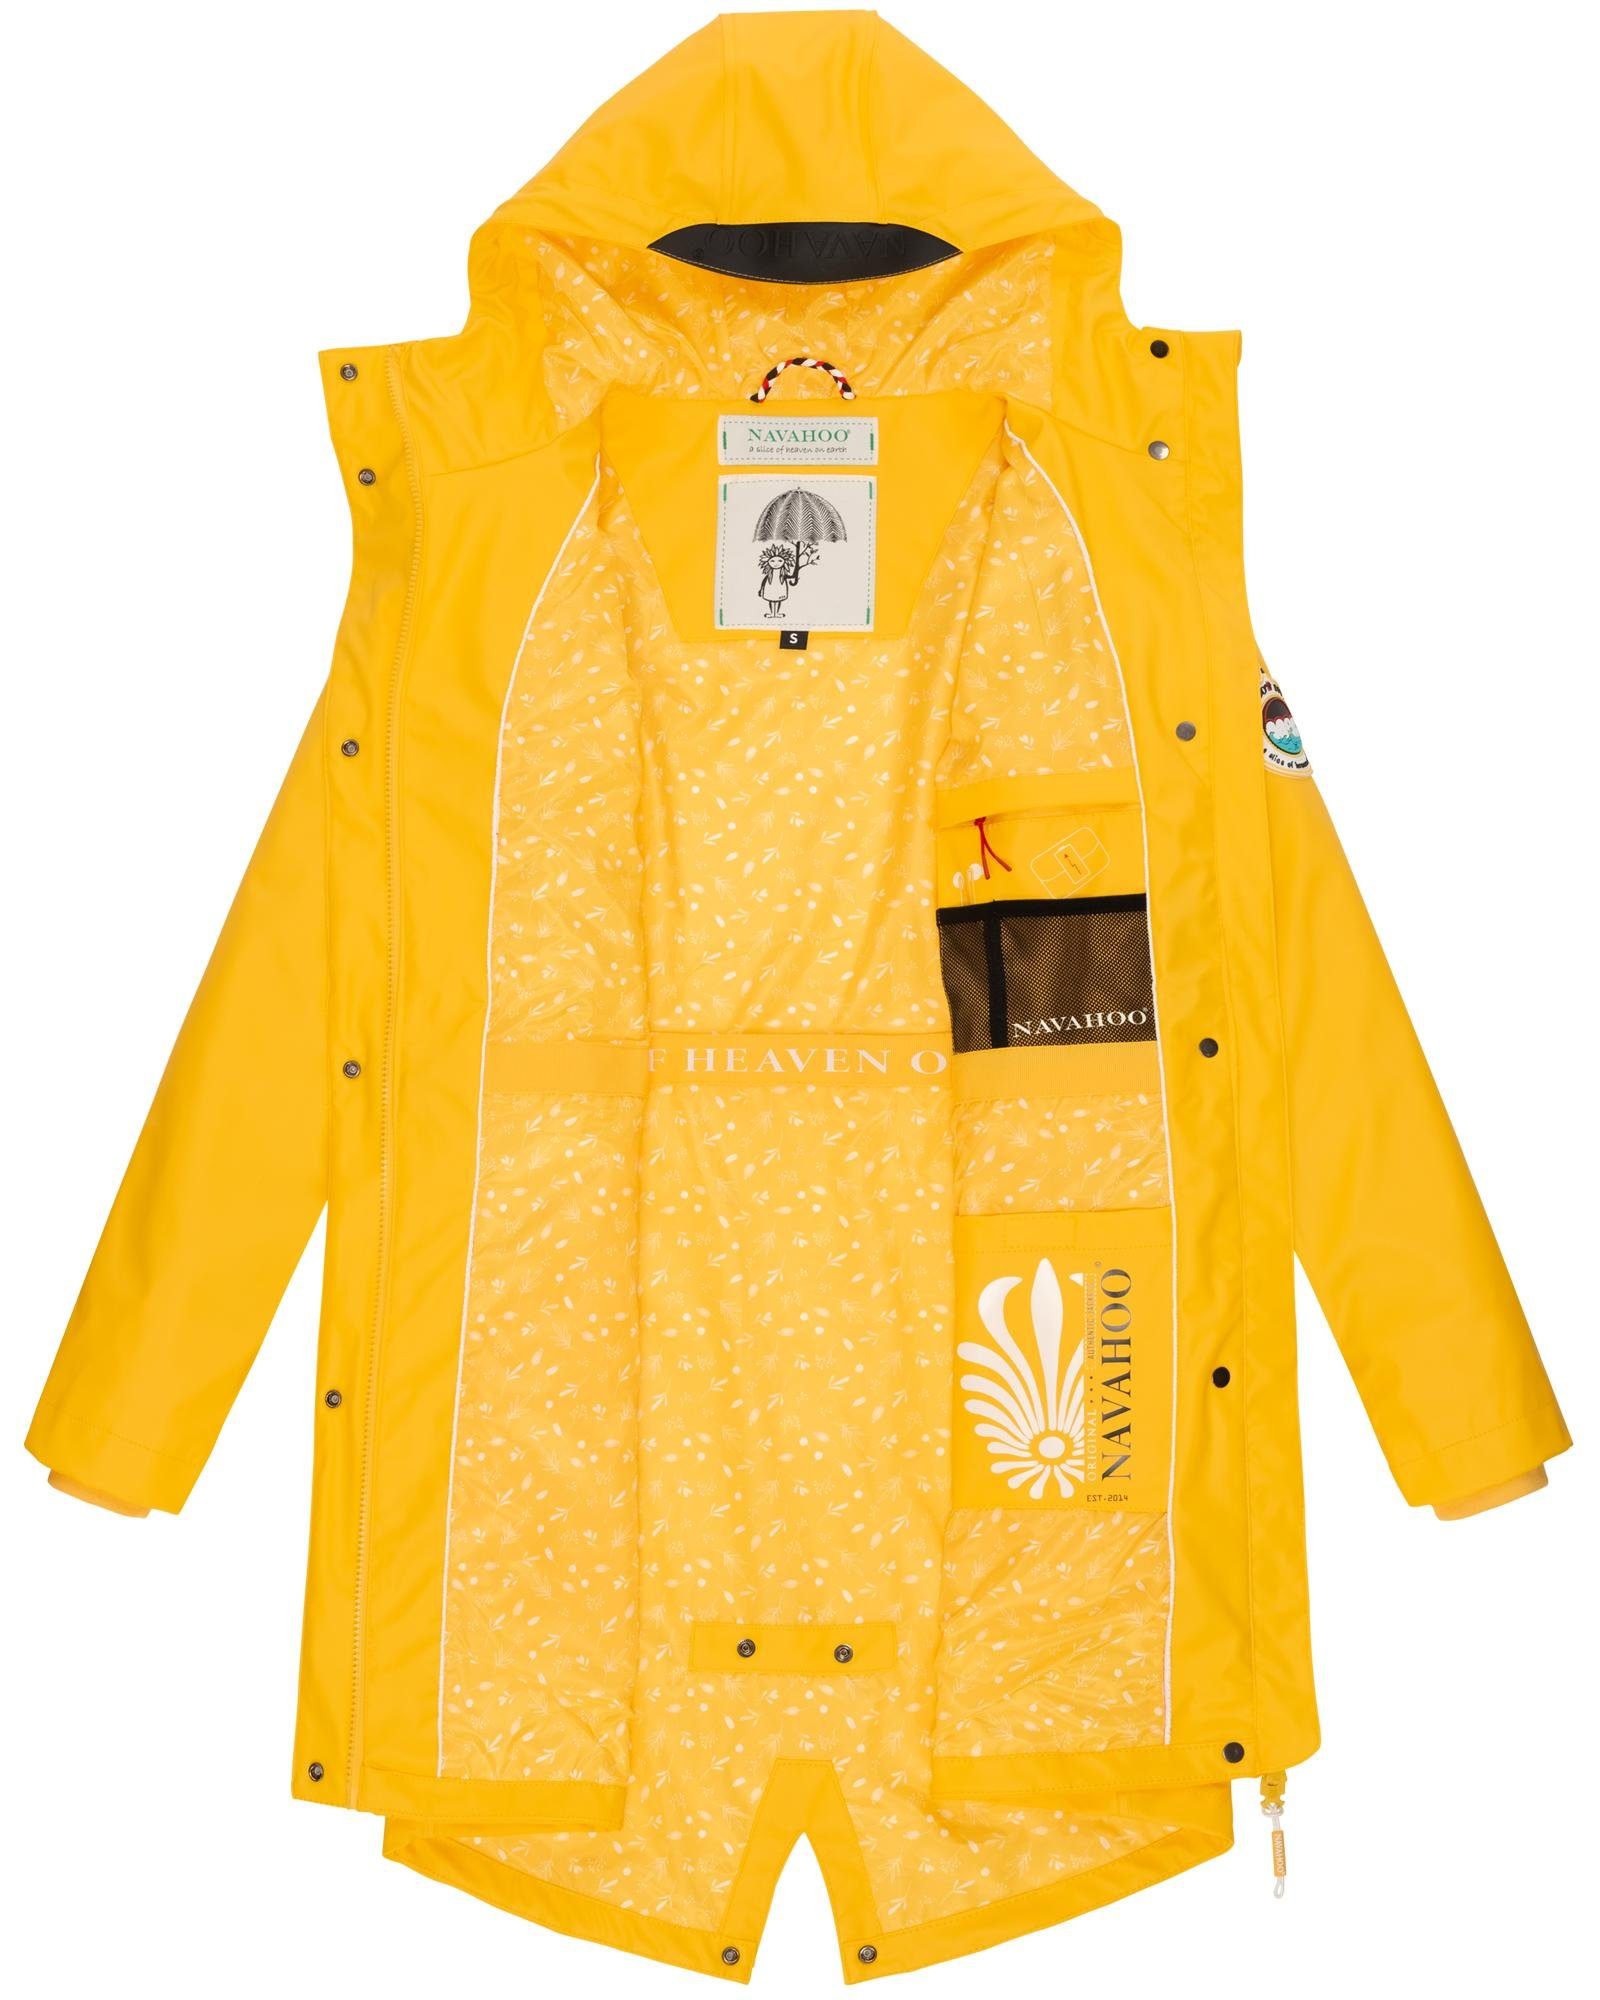 Regenmantel Damen Outdoor gelb modischer Navahoo Regenjacke Stormoo Tropical